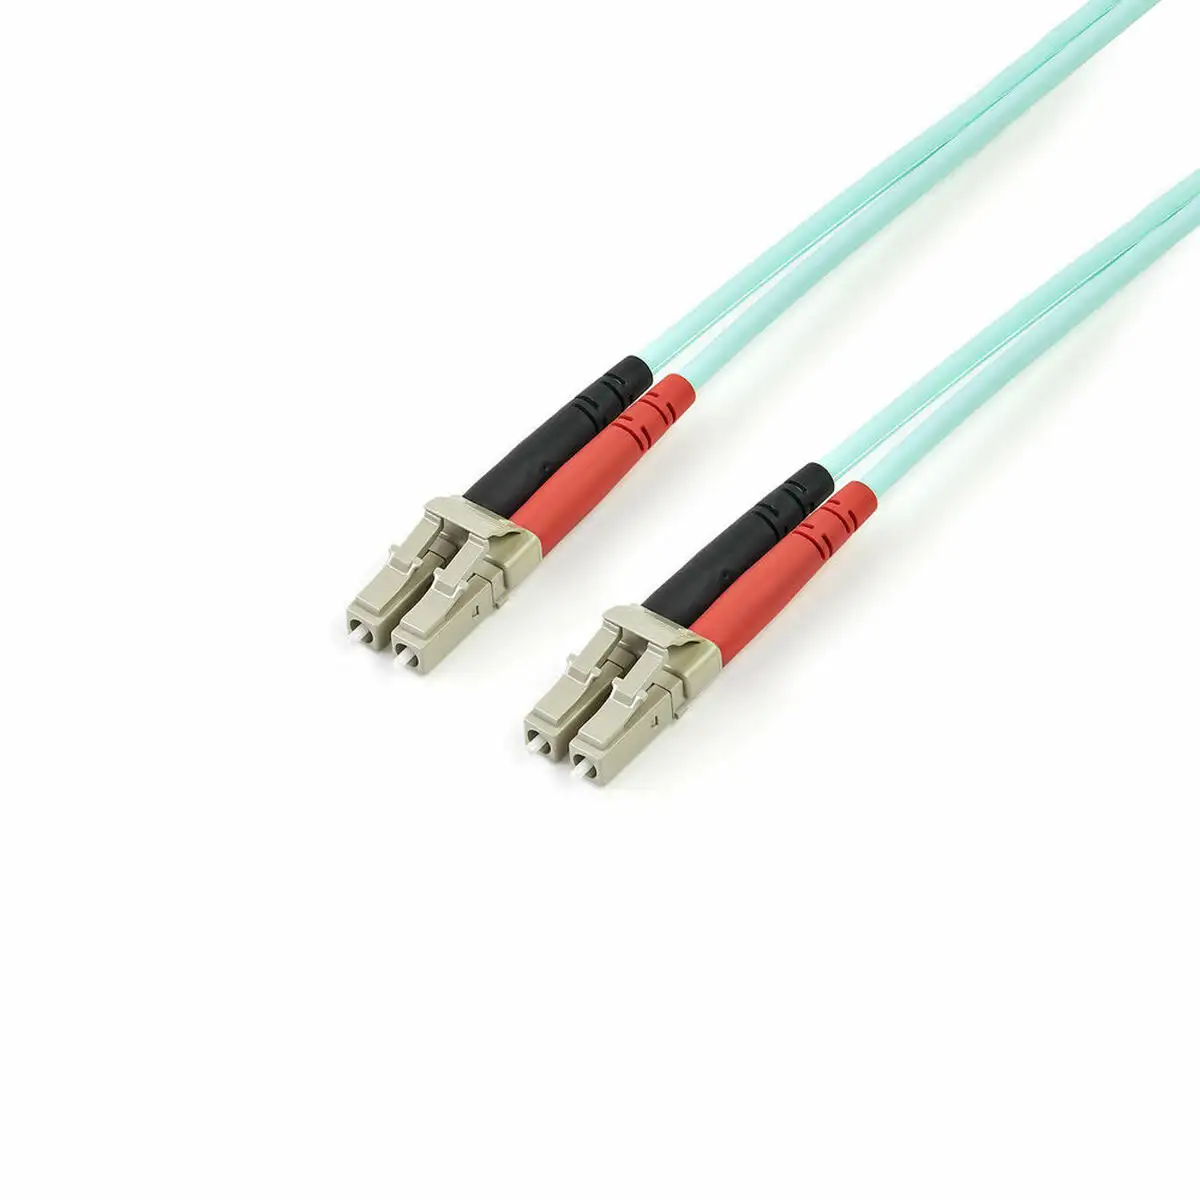 Cable a fibre optique startech a50fblclc2 2 m _2876. Bienvenue sur DIAYTAR SENEGAL - Où Chaque Détail compte. Plongez dans notre univers et choisissez des produits qui ajoutent de l'éclat et de la joie à votre quotidien.